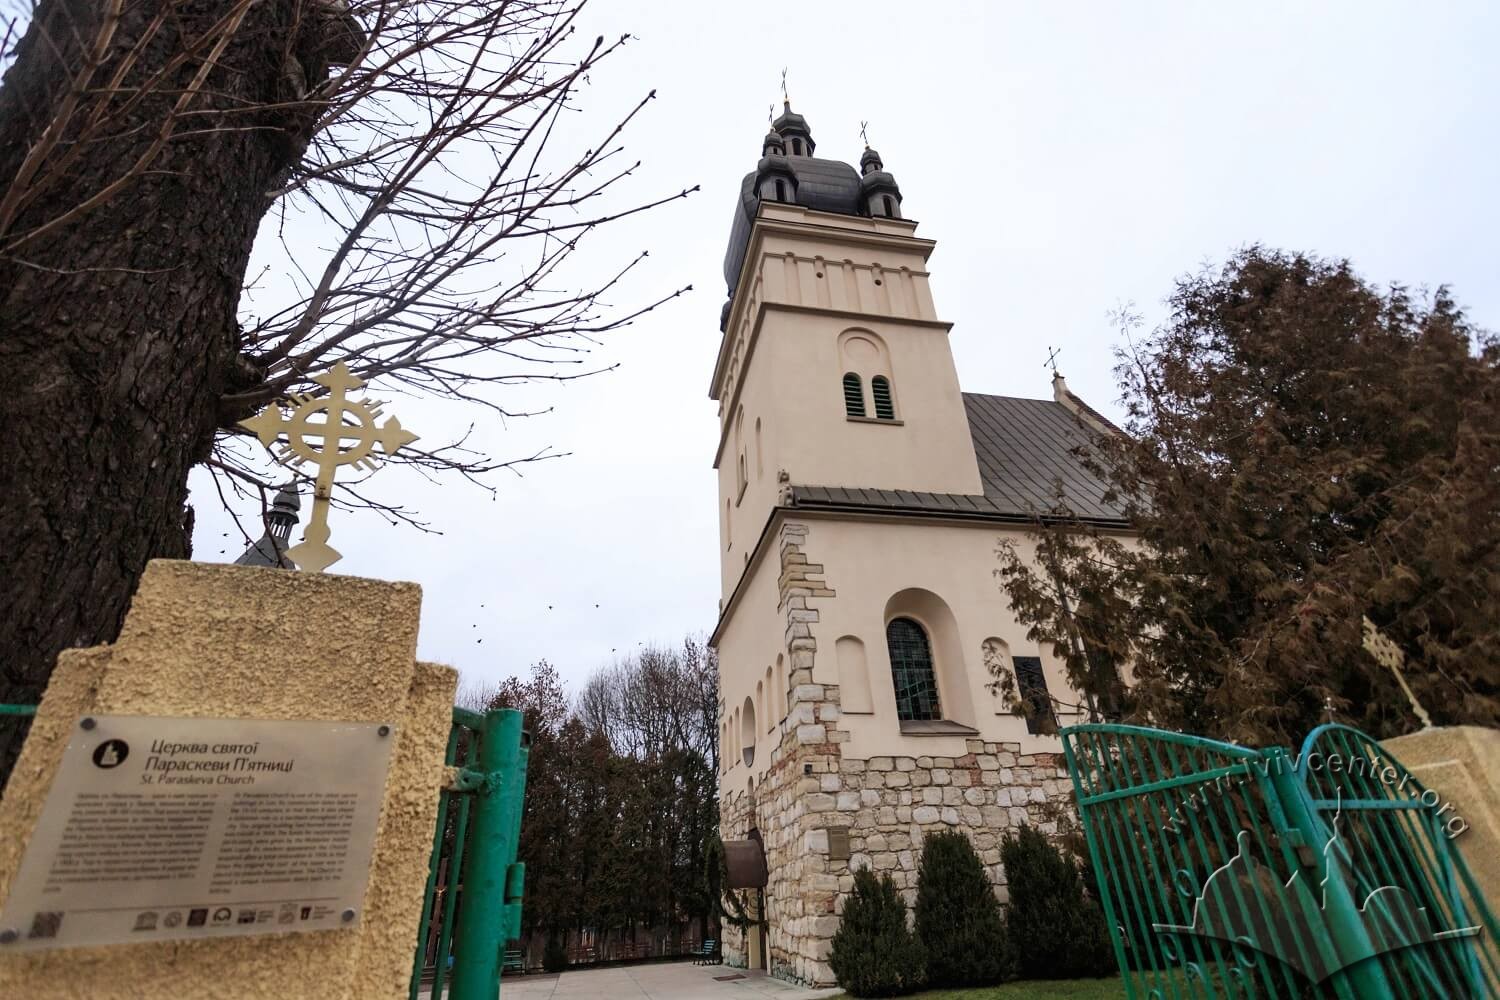 Vul. Khmelnytskoho, 77. Entrance to the church territory/Photo courtesy of Nazarii Parkhomyk, 2015